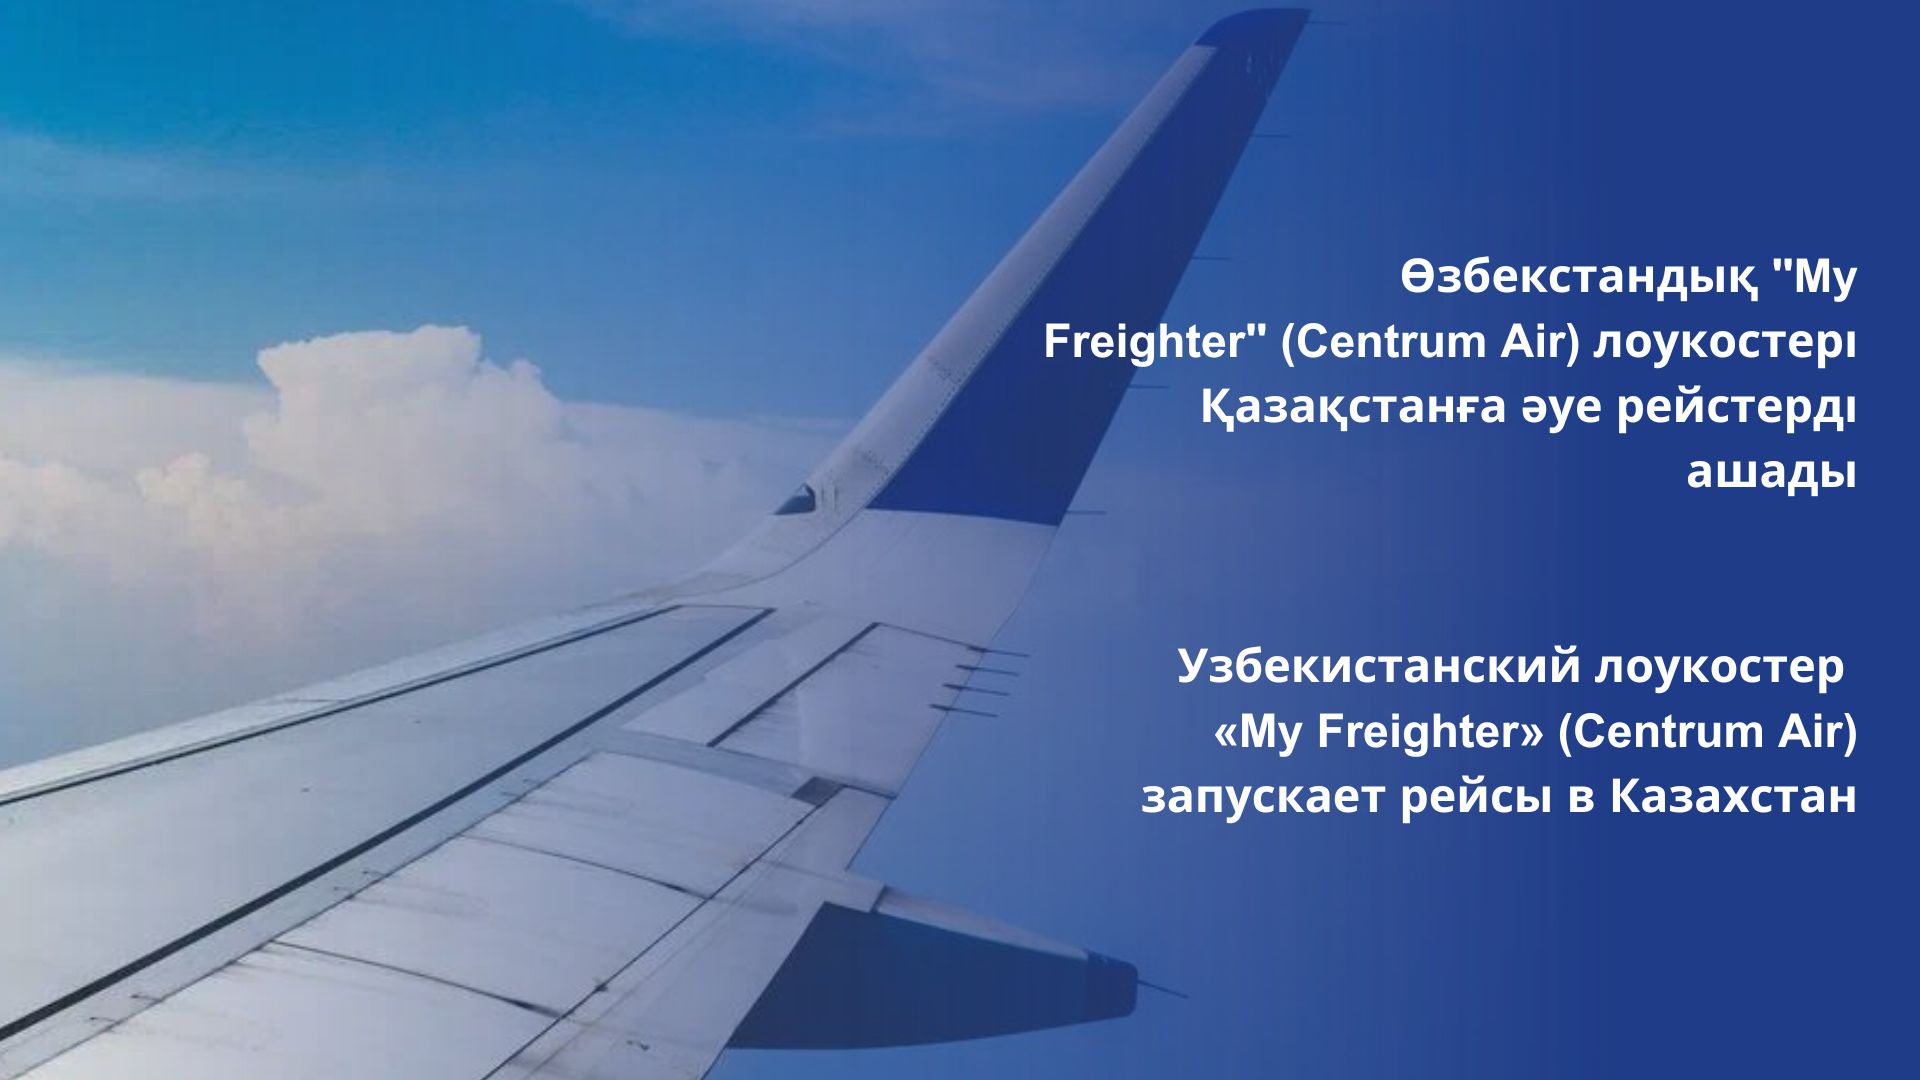 Узбекистанский лоукостер «My Freighter» (Centrum Air) запускает рейсы в Казахстан